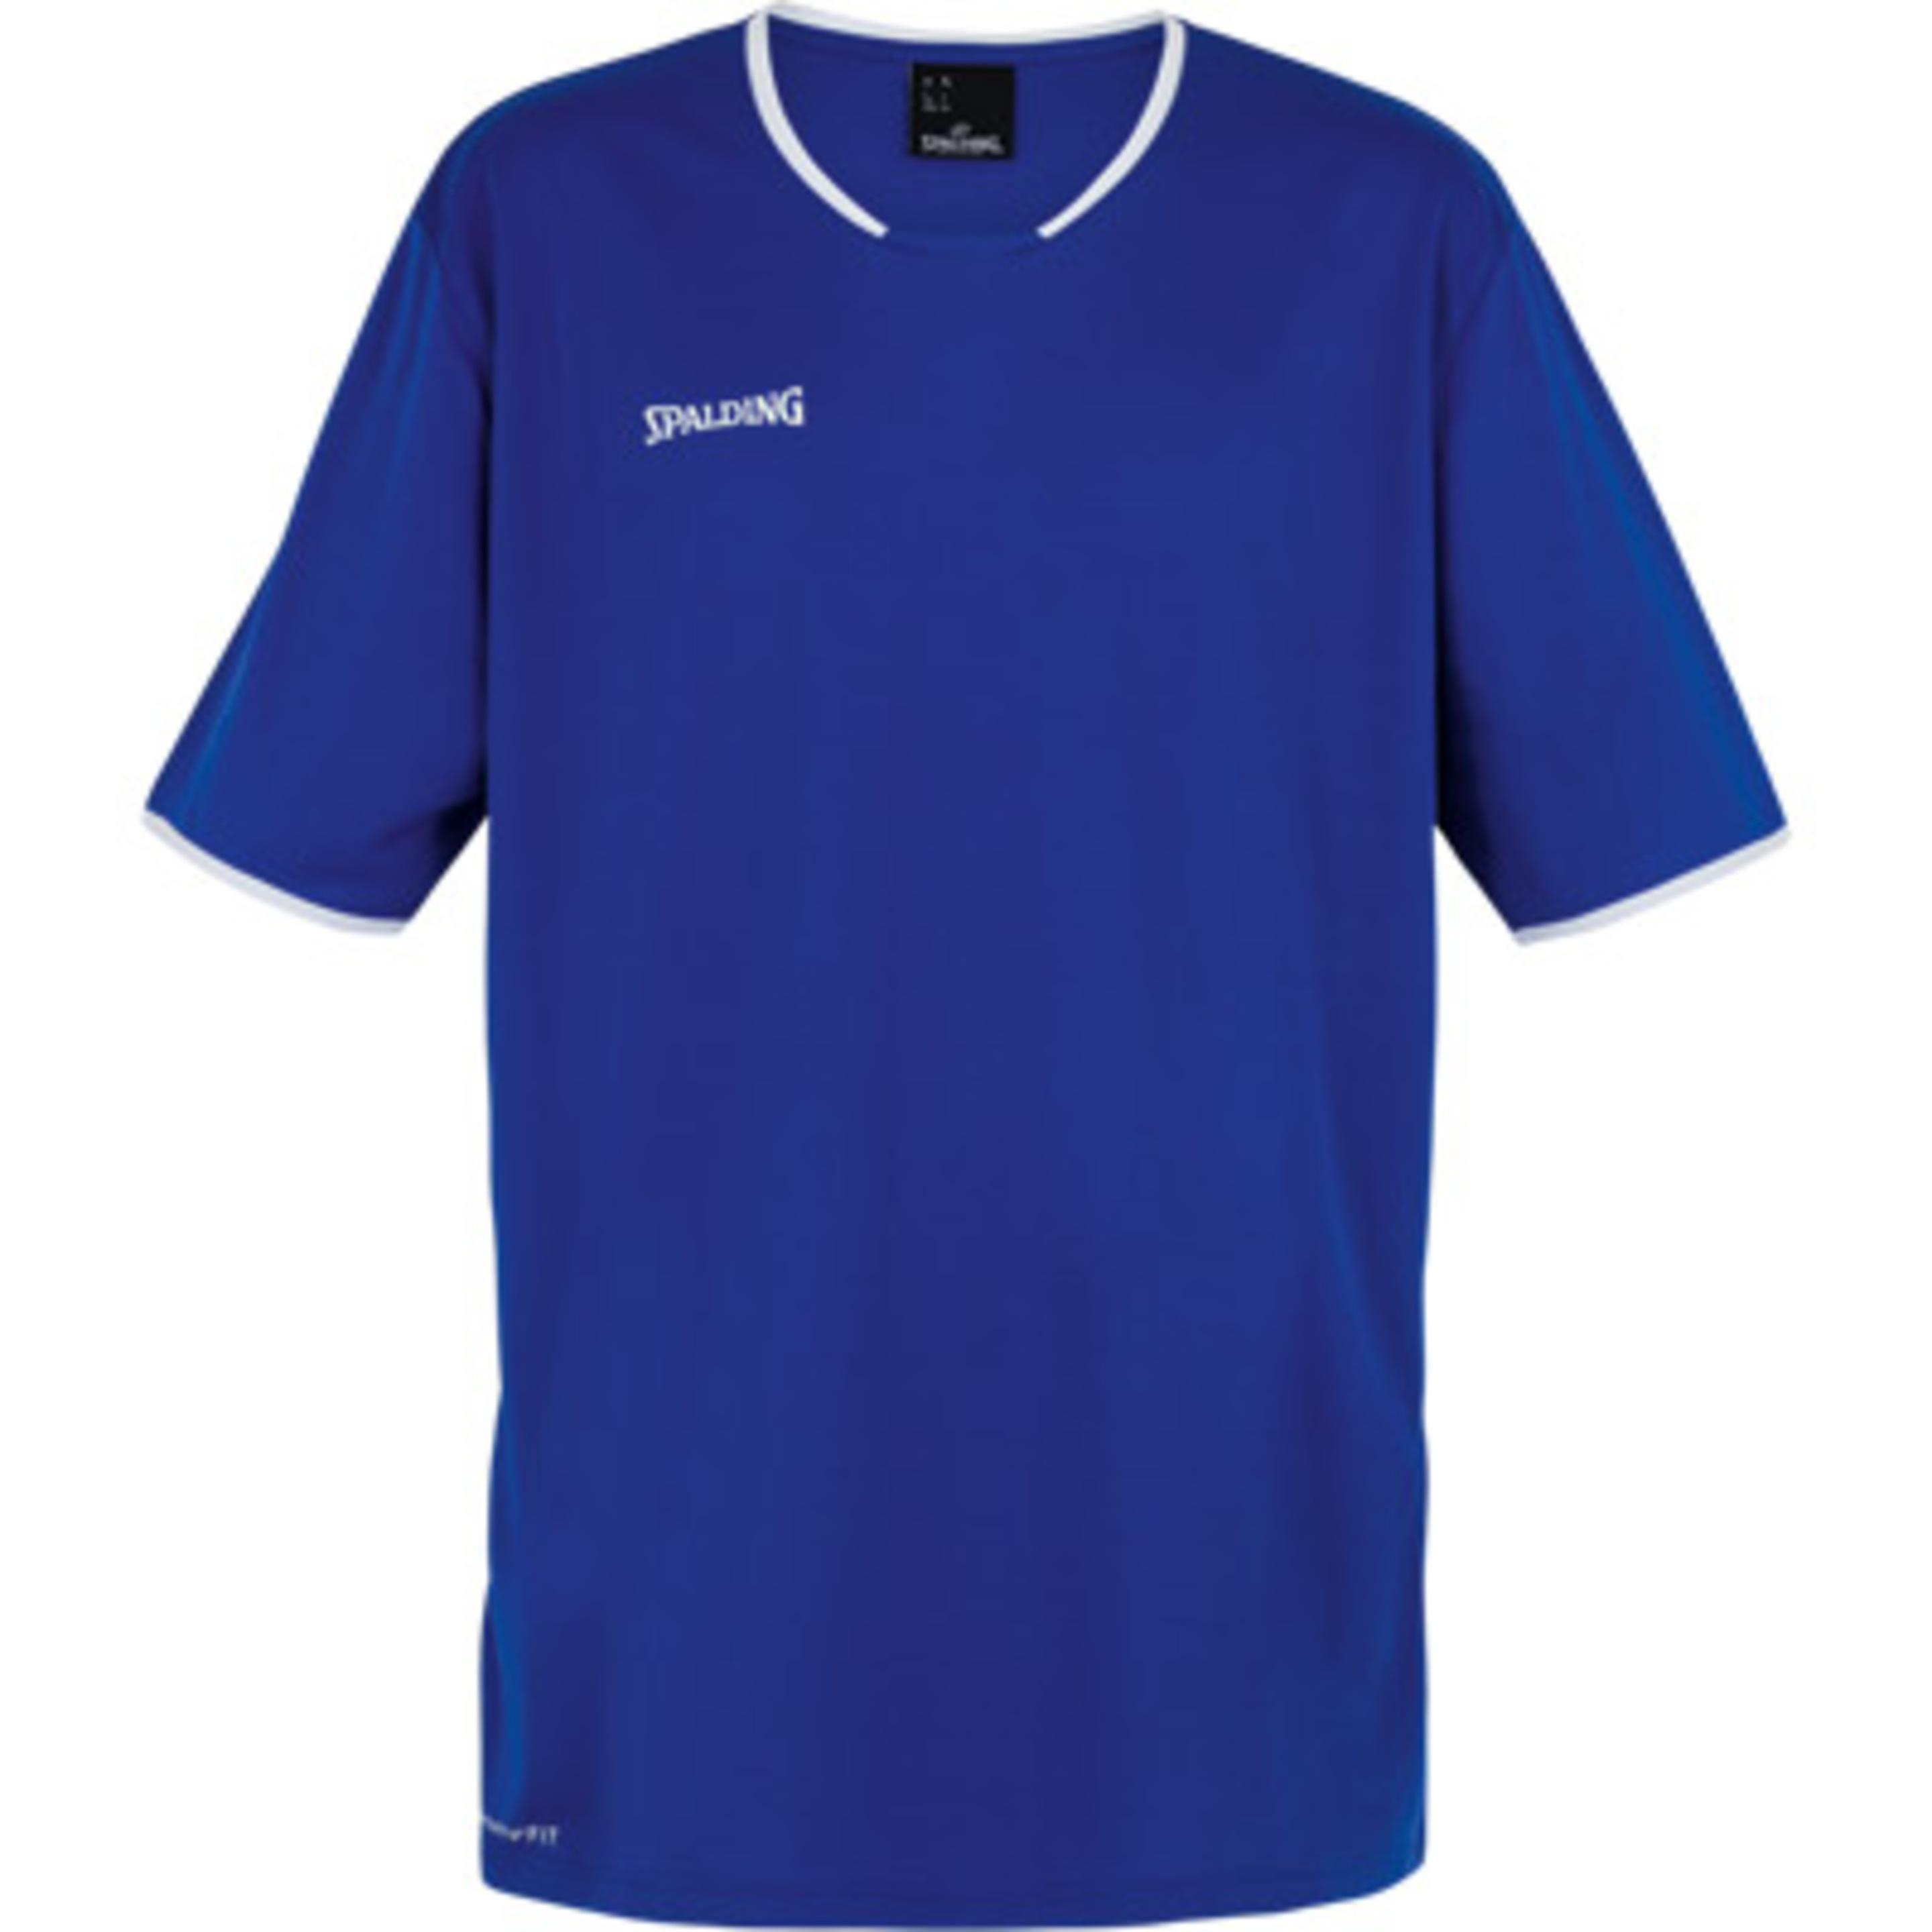 Move Shooting Shirt S/s Azul Royal/blanco Spalding - azul - 